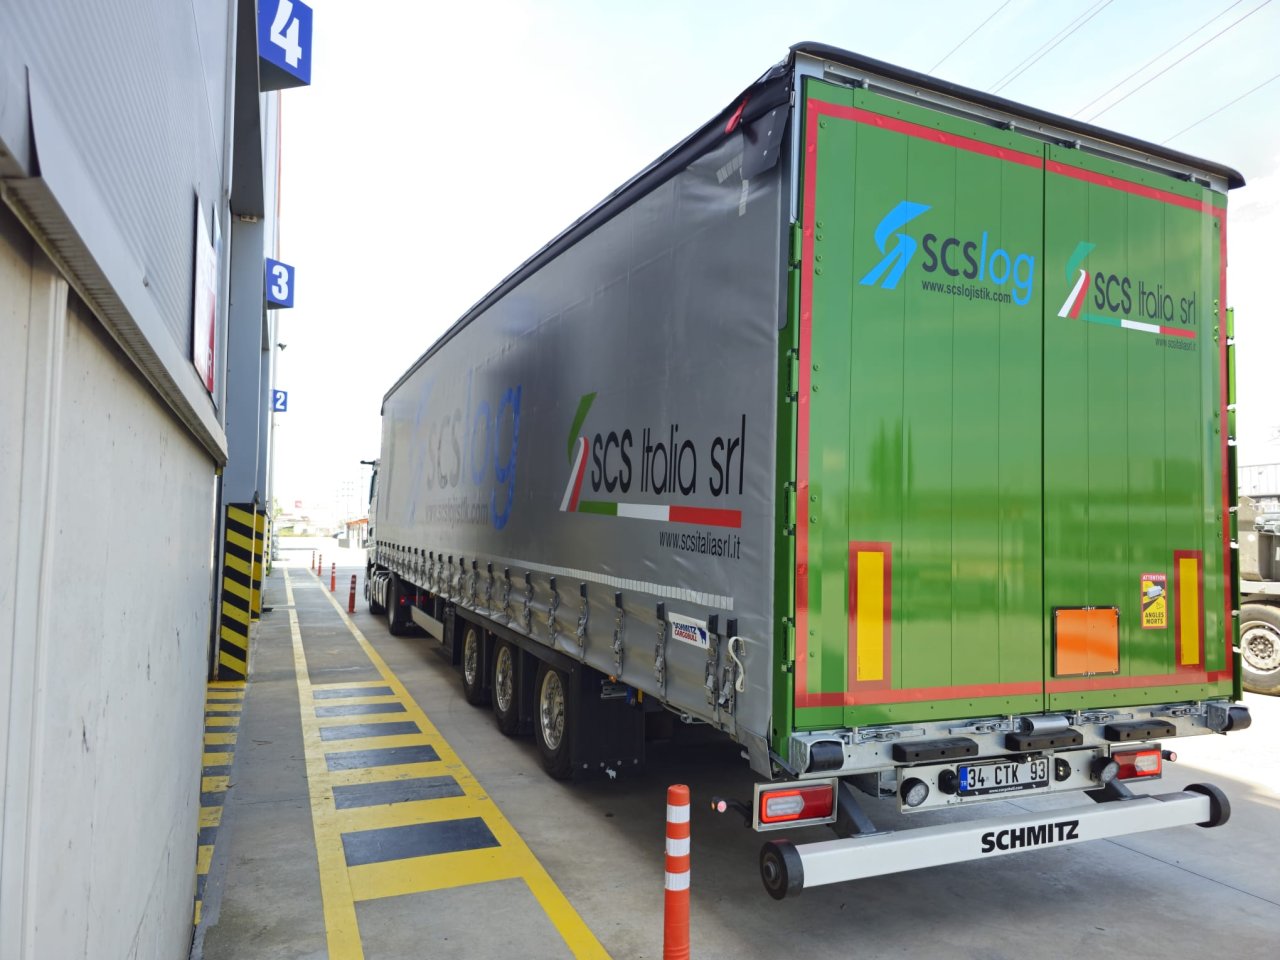 SCSLOG Lojistik, Çevre Duyarlılığı İçin Schmitz Cargobull'u Tercih Etti